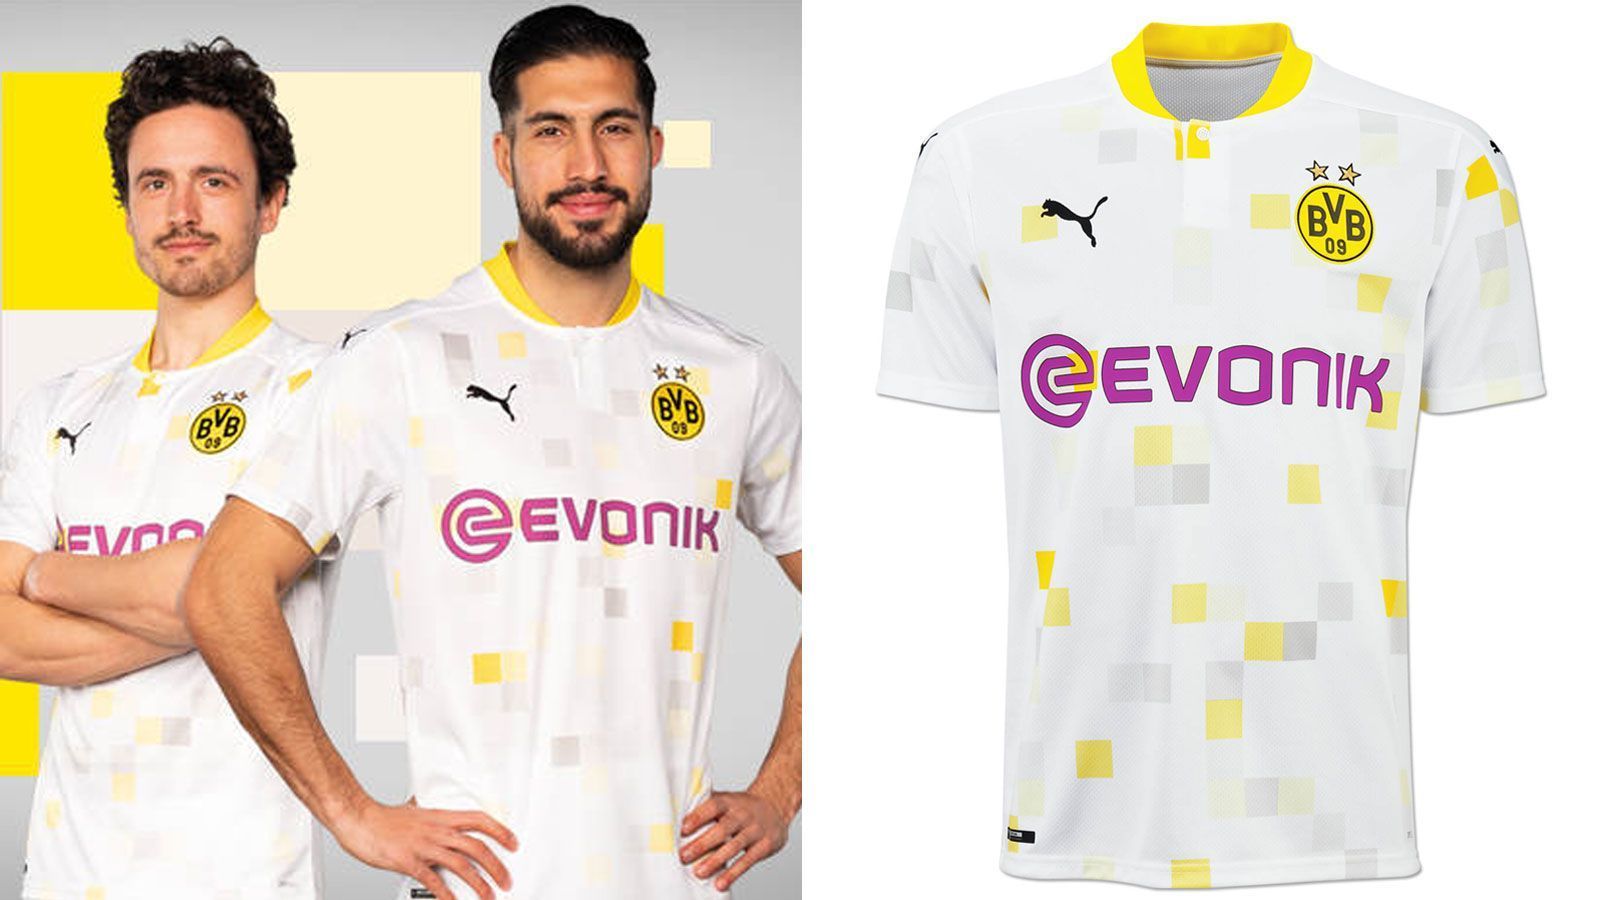 
                <strong>Borussia Dortmund (Cuptrikot 2020/21)</strong><br>
                Auch zur kommenden Saison werden die Dortmunder im DFB-Pokal und der Champions League ein eigens kreiertes Auswärts-Trikot überstreifen. Anders als in den vergangenen Jahren ist das Trikot fast komplett weiß und mit einigen gelben und grauen Quadraten versehen, die an Pixel erinnern. Für die Pokalwettbewerbe wechselt zudem der Sponsor von "1&1" zu "Evonik". 
              